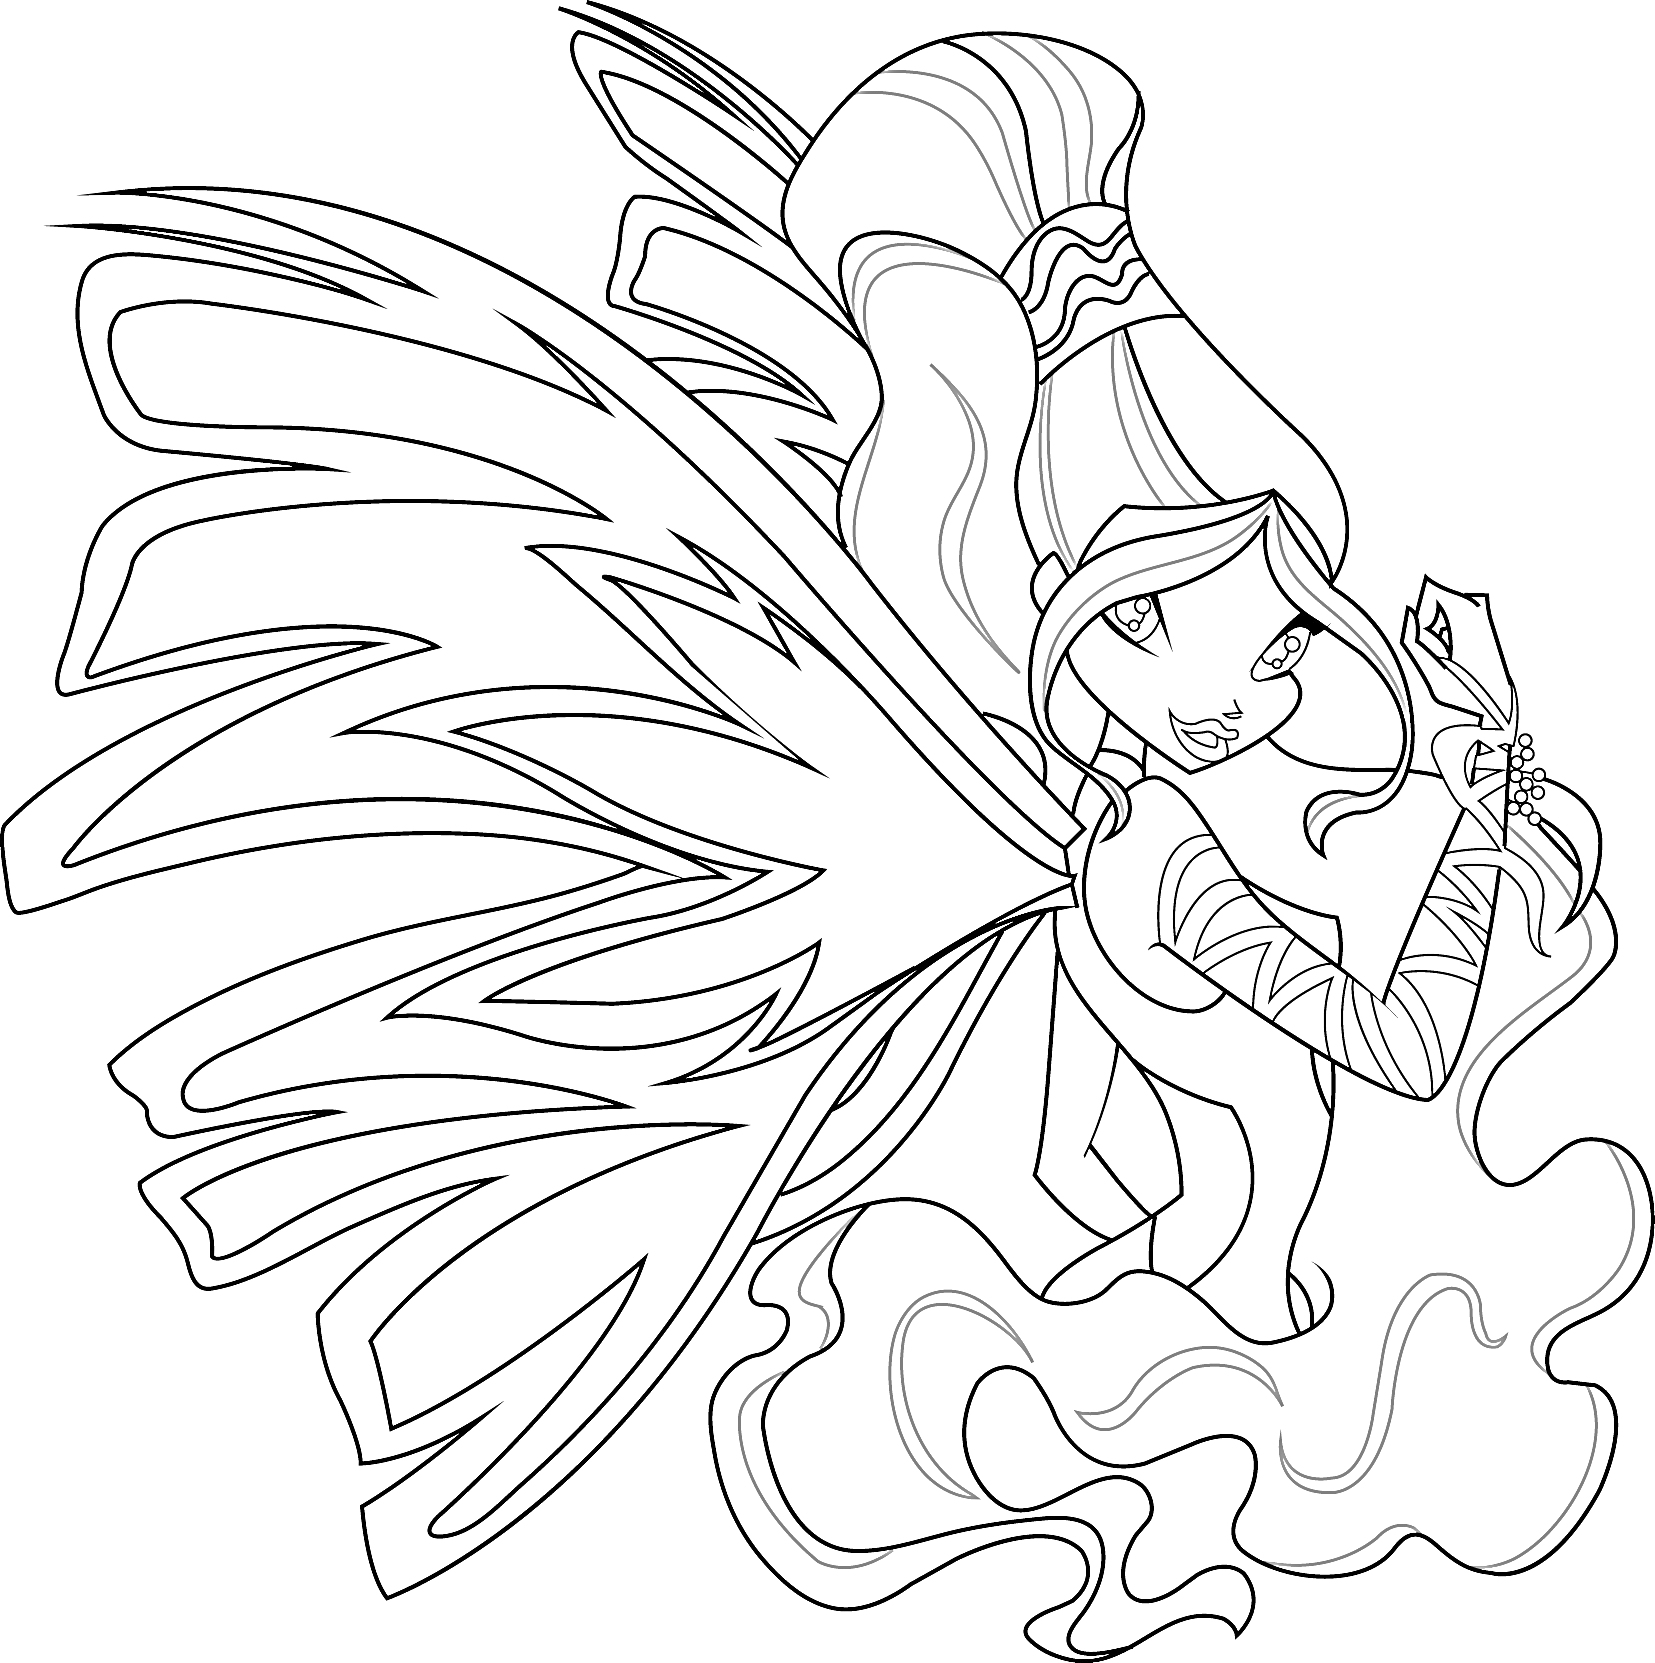 Раскраска Фея Винкс Сиреникс с длинными волосами, крыльями и в платье с узорами, позирует в движении под водой